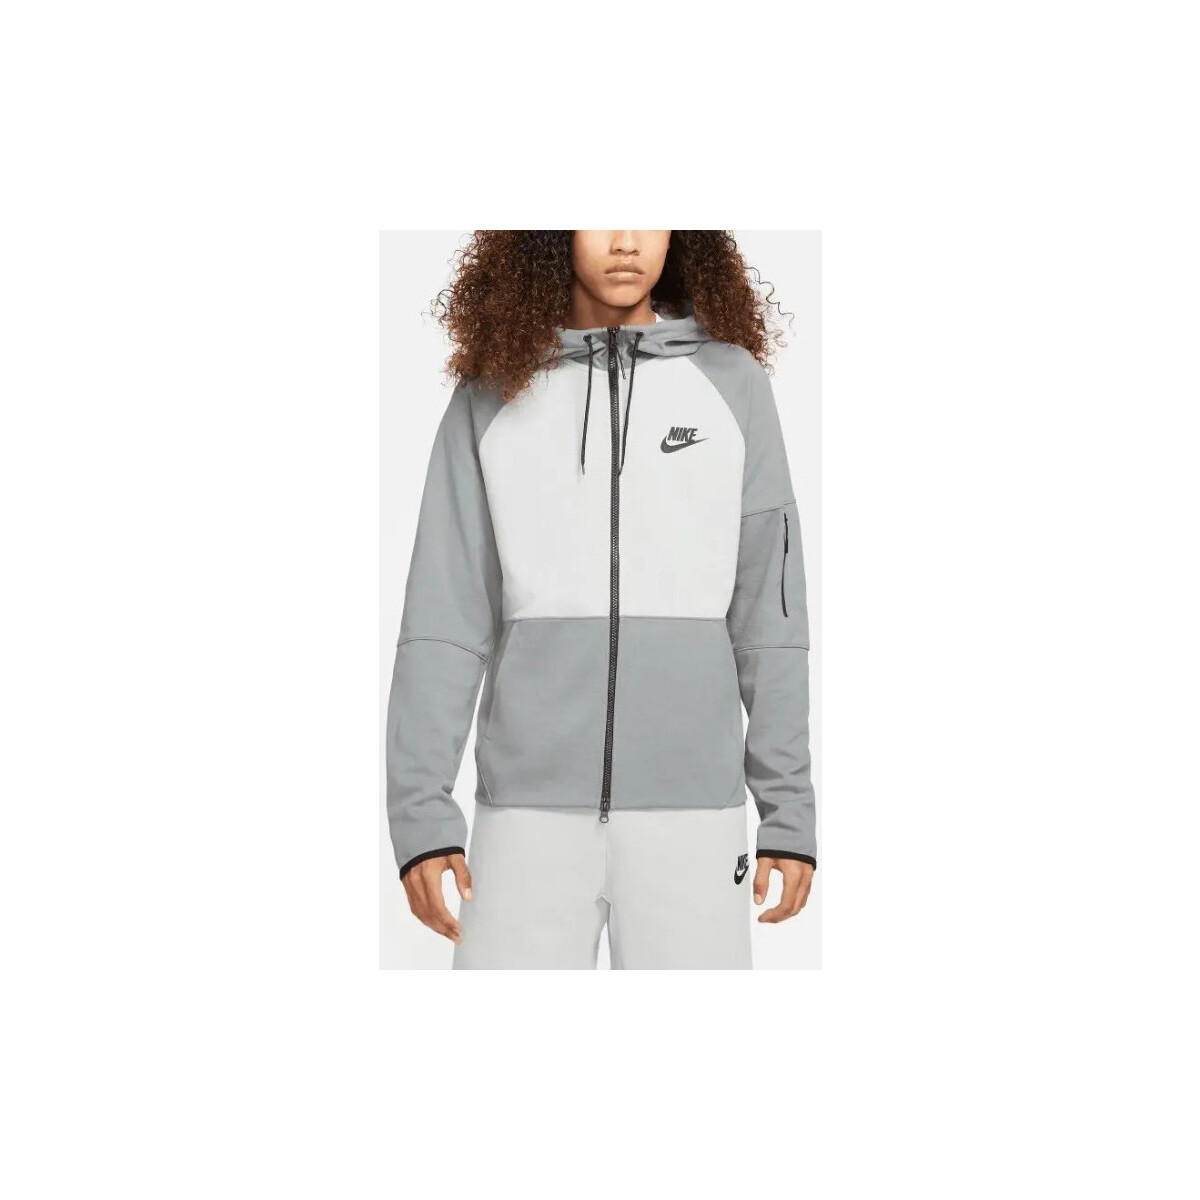 Nike Autres - Sweat zippé - gris et blanc V3iUE6TV